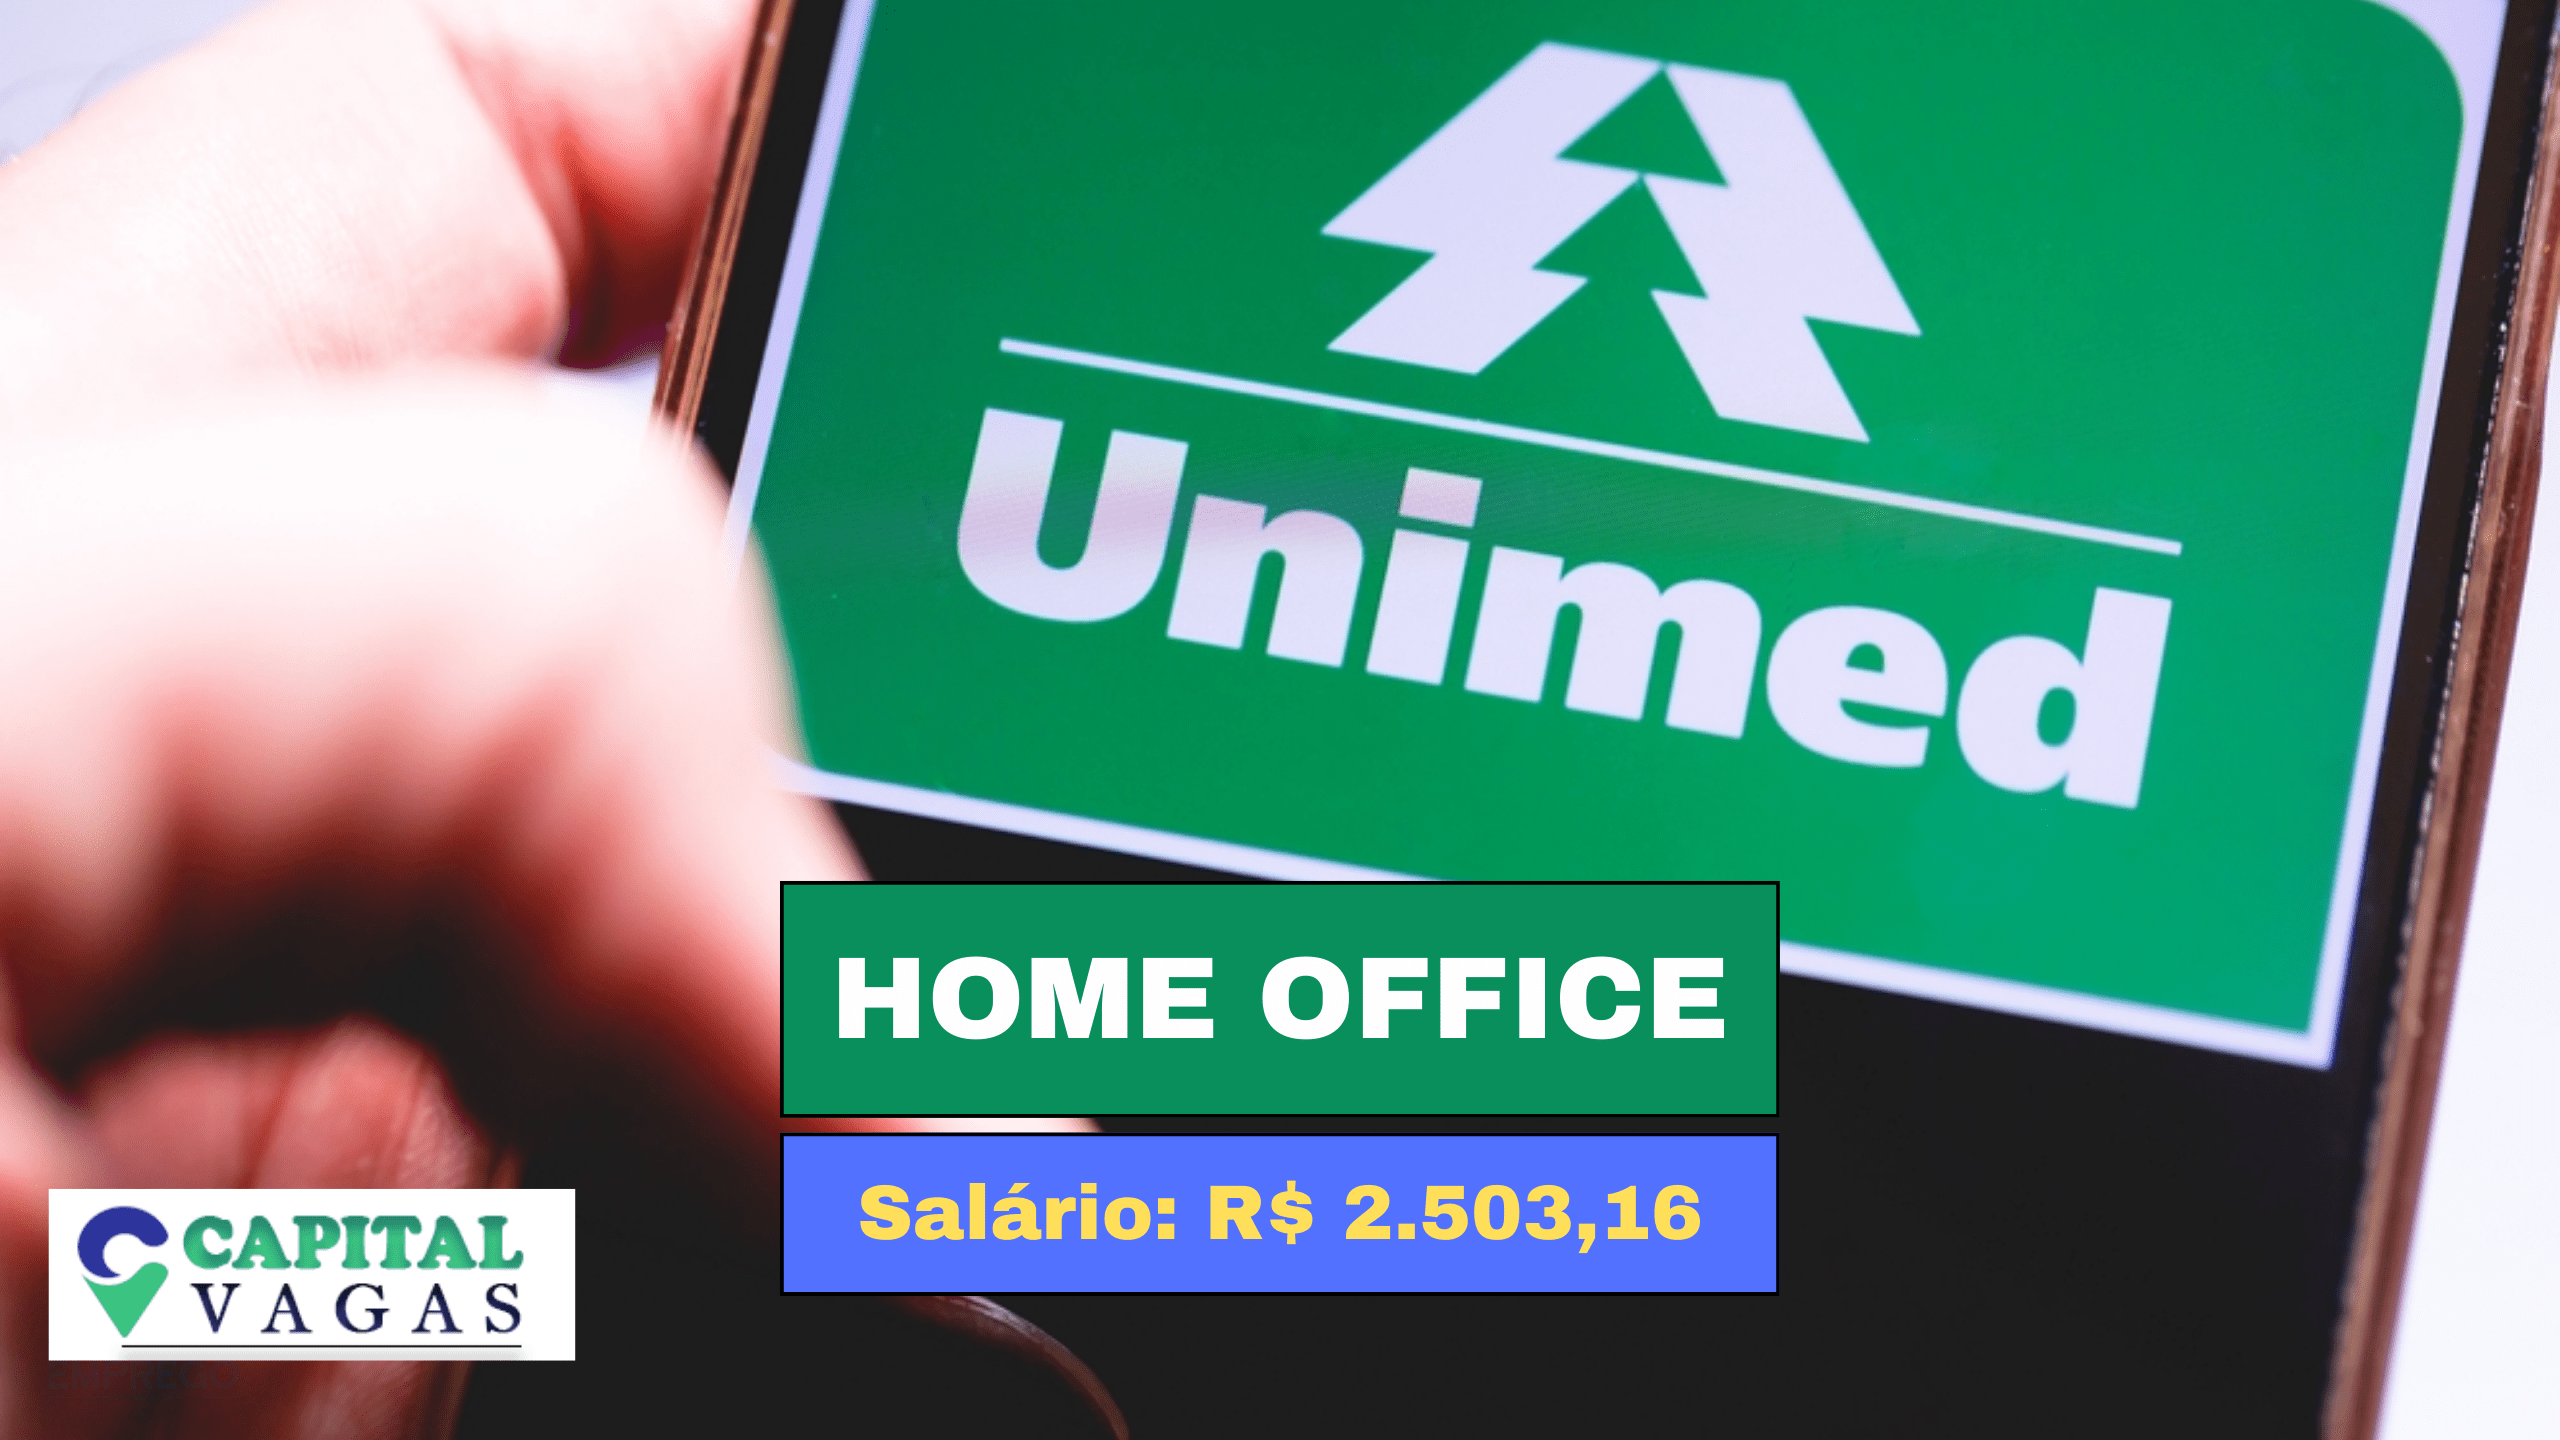 Trabalhe em Casa! Unimed anuncia vaga HOME OFFICE para Assistente de Gestão e Relacionamento com salário de R$ 2.503,16 e Alimentação de R$ 800,00